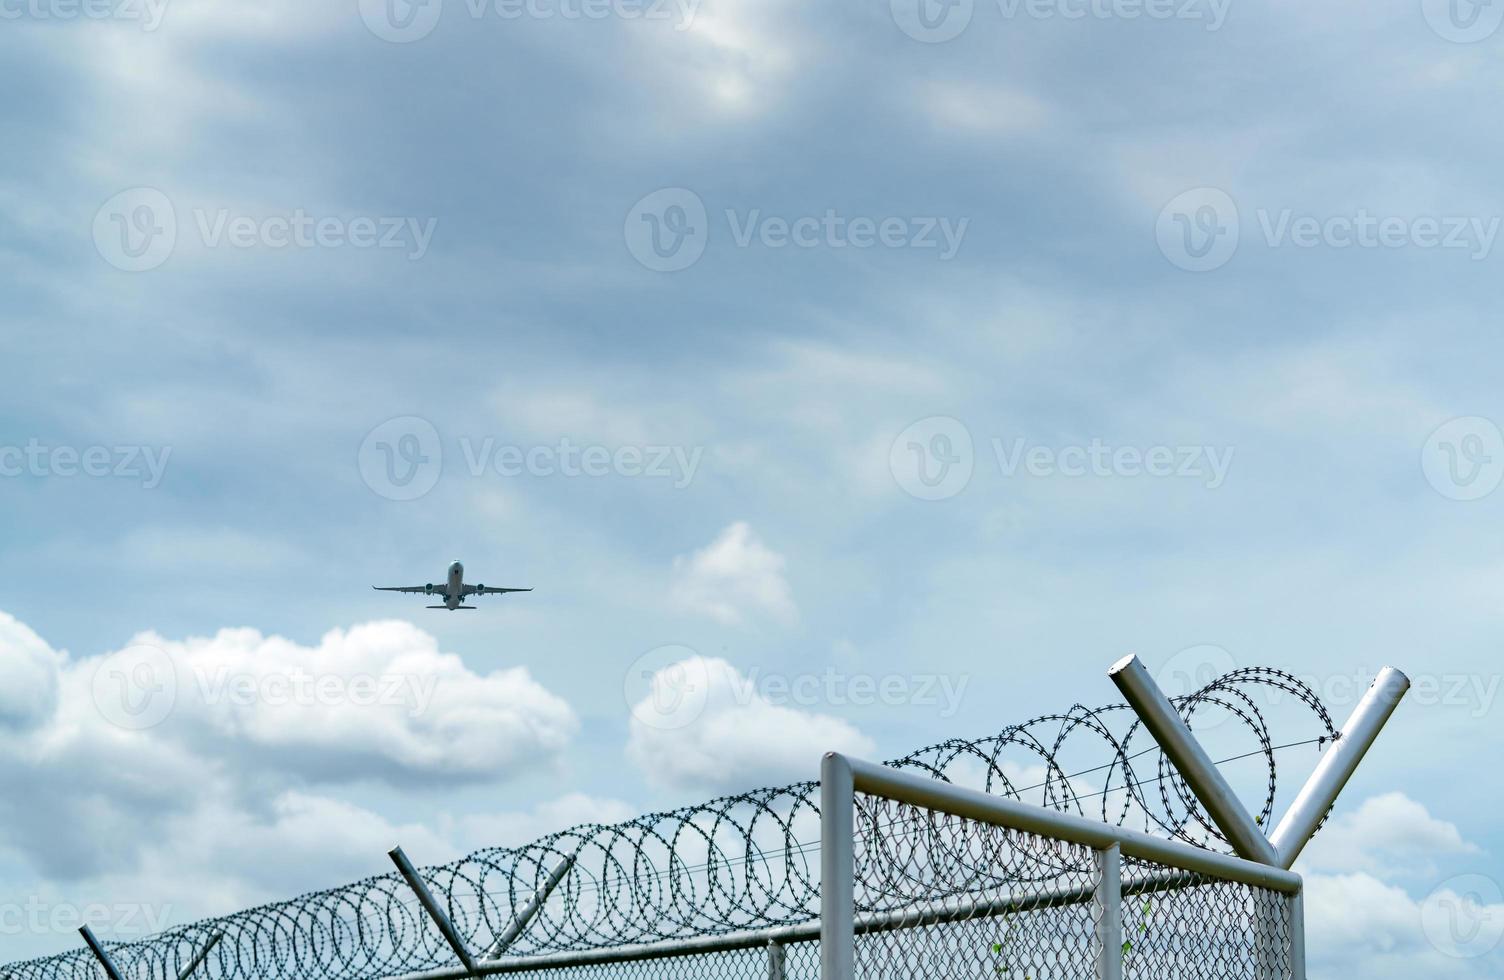 vliegtuig vliegen op blauwe lucht en witte wolken boven metalen hek. luchtvaart zaken. commercieel vliegtuig. luchttransport. hek voor veiligheid en beveiliging. luchtvaart zaken. Met het vliegtuig reizen. foto